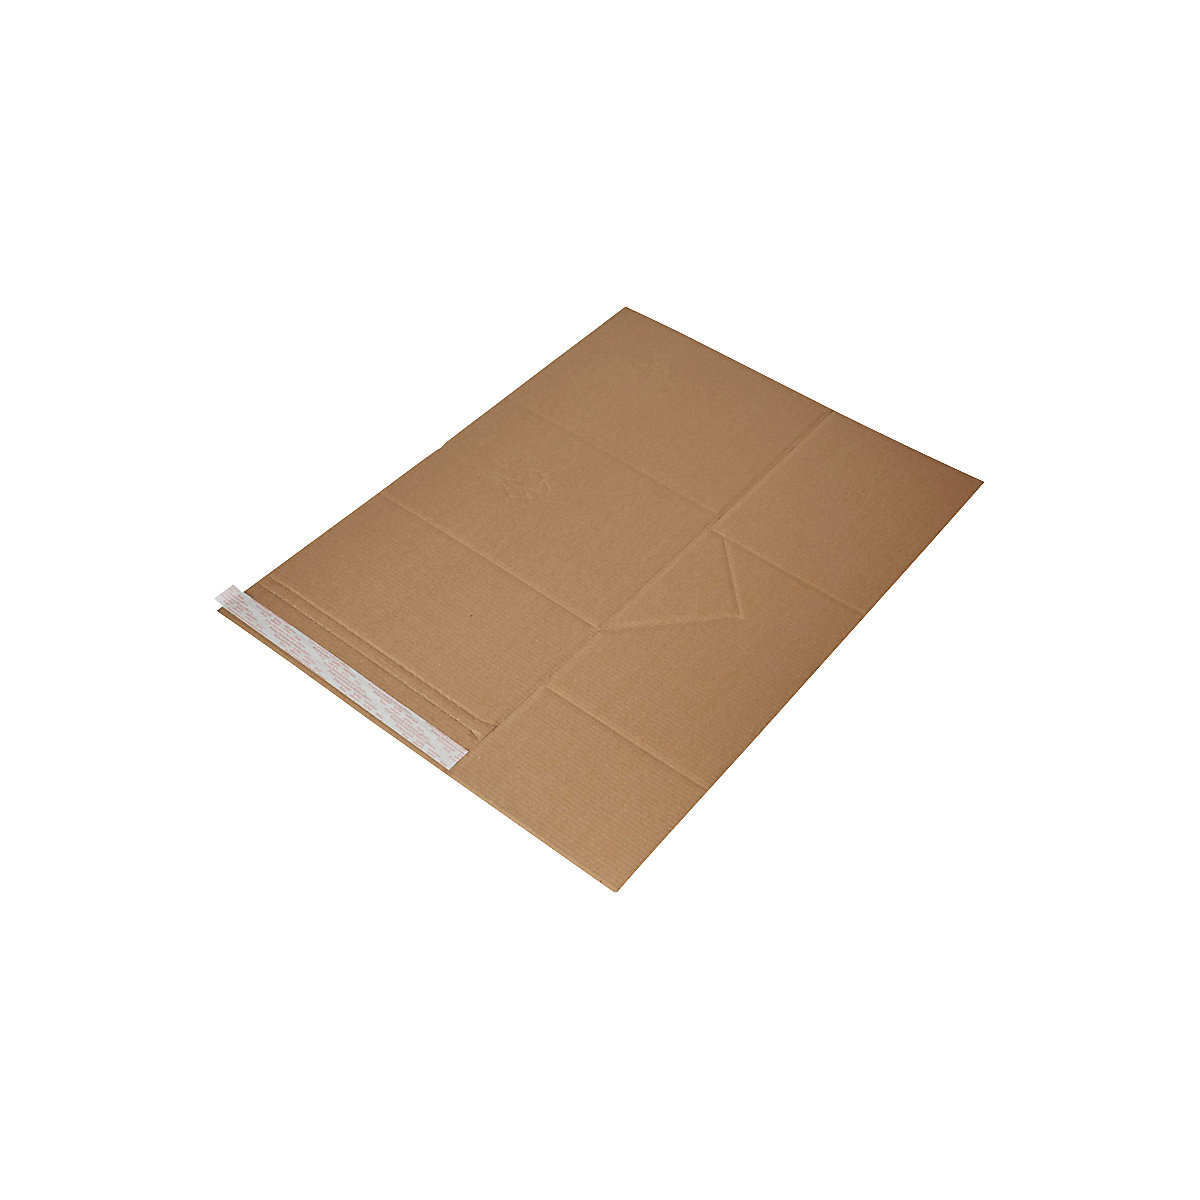 Imballaggio universale Drehfix – flow, con chiusura autoadesiva, lungh. x largh. 305 x 230 mm, a partire da 150 pz.-3